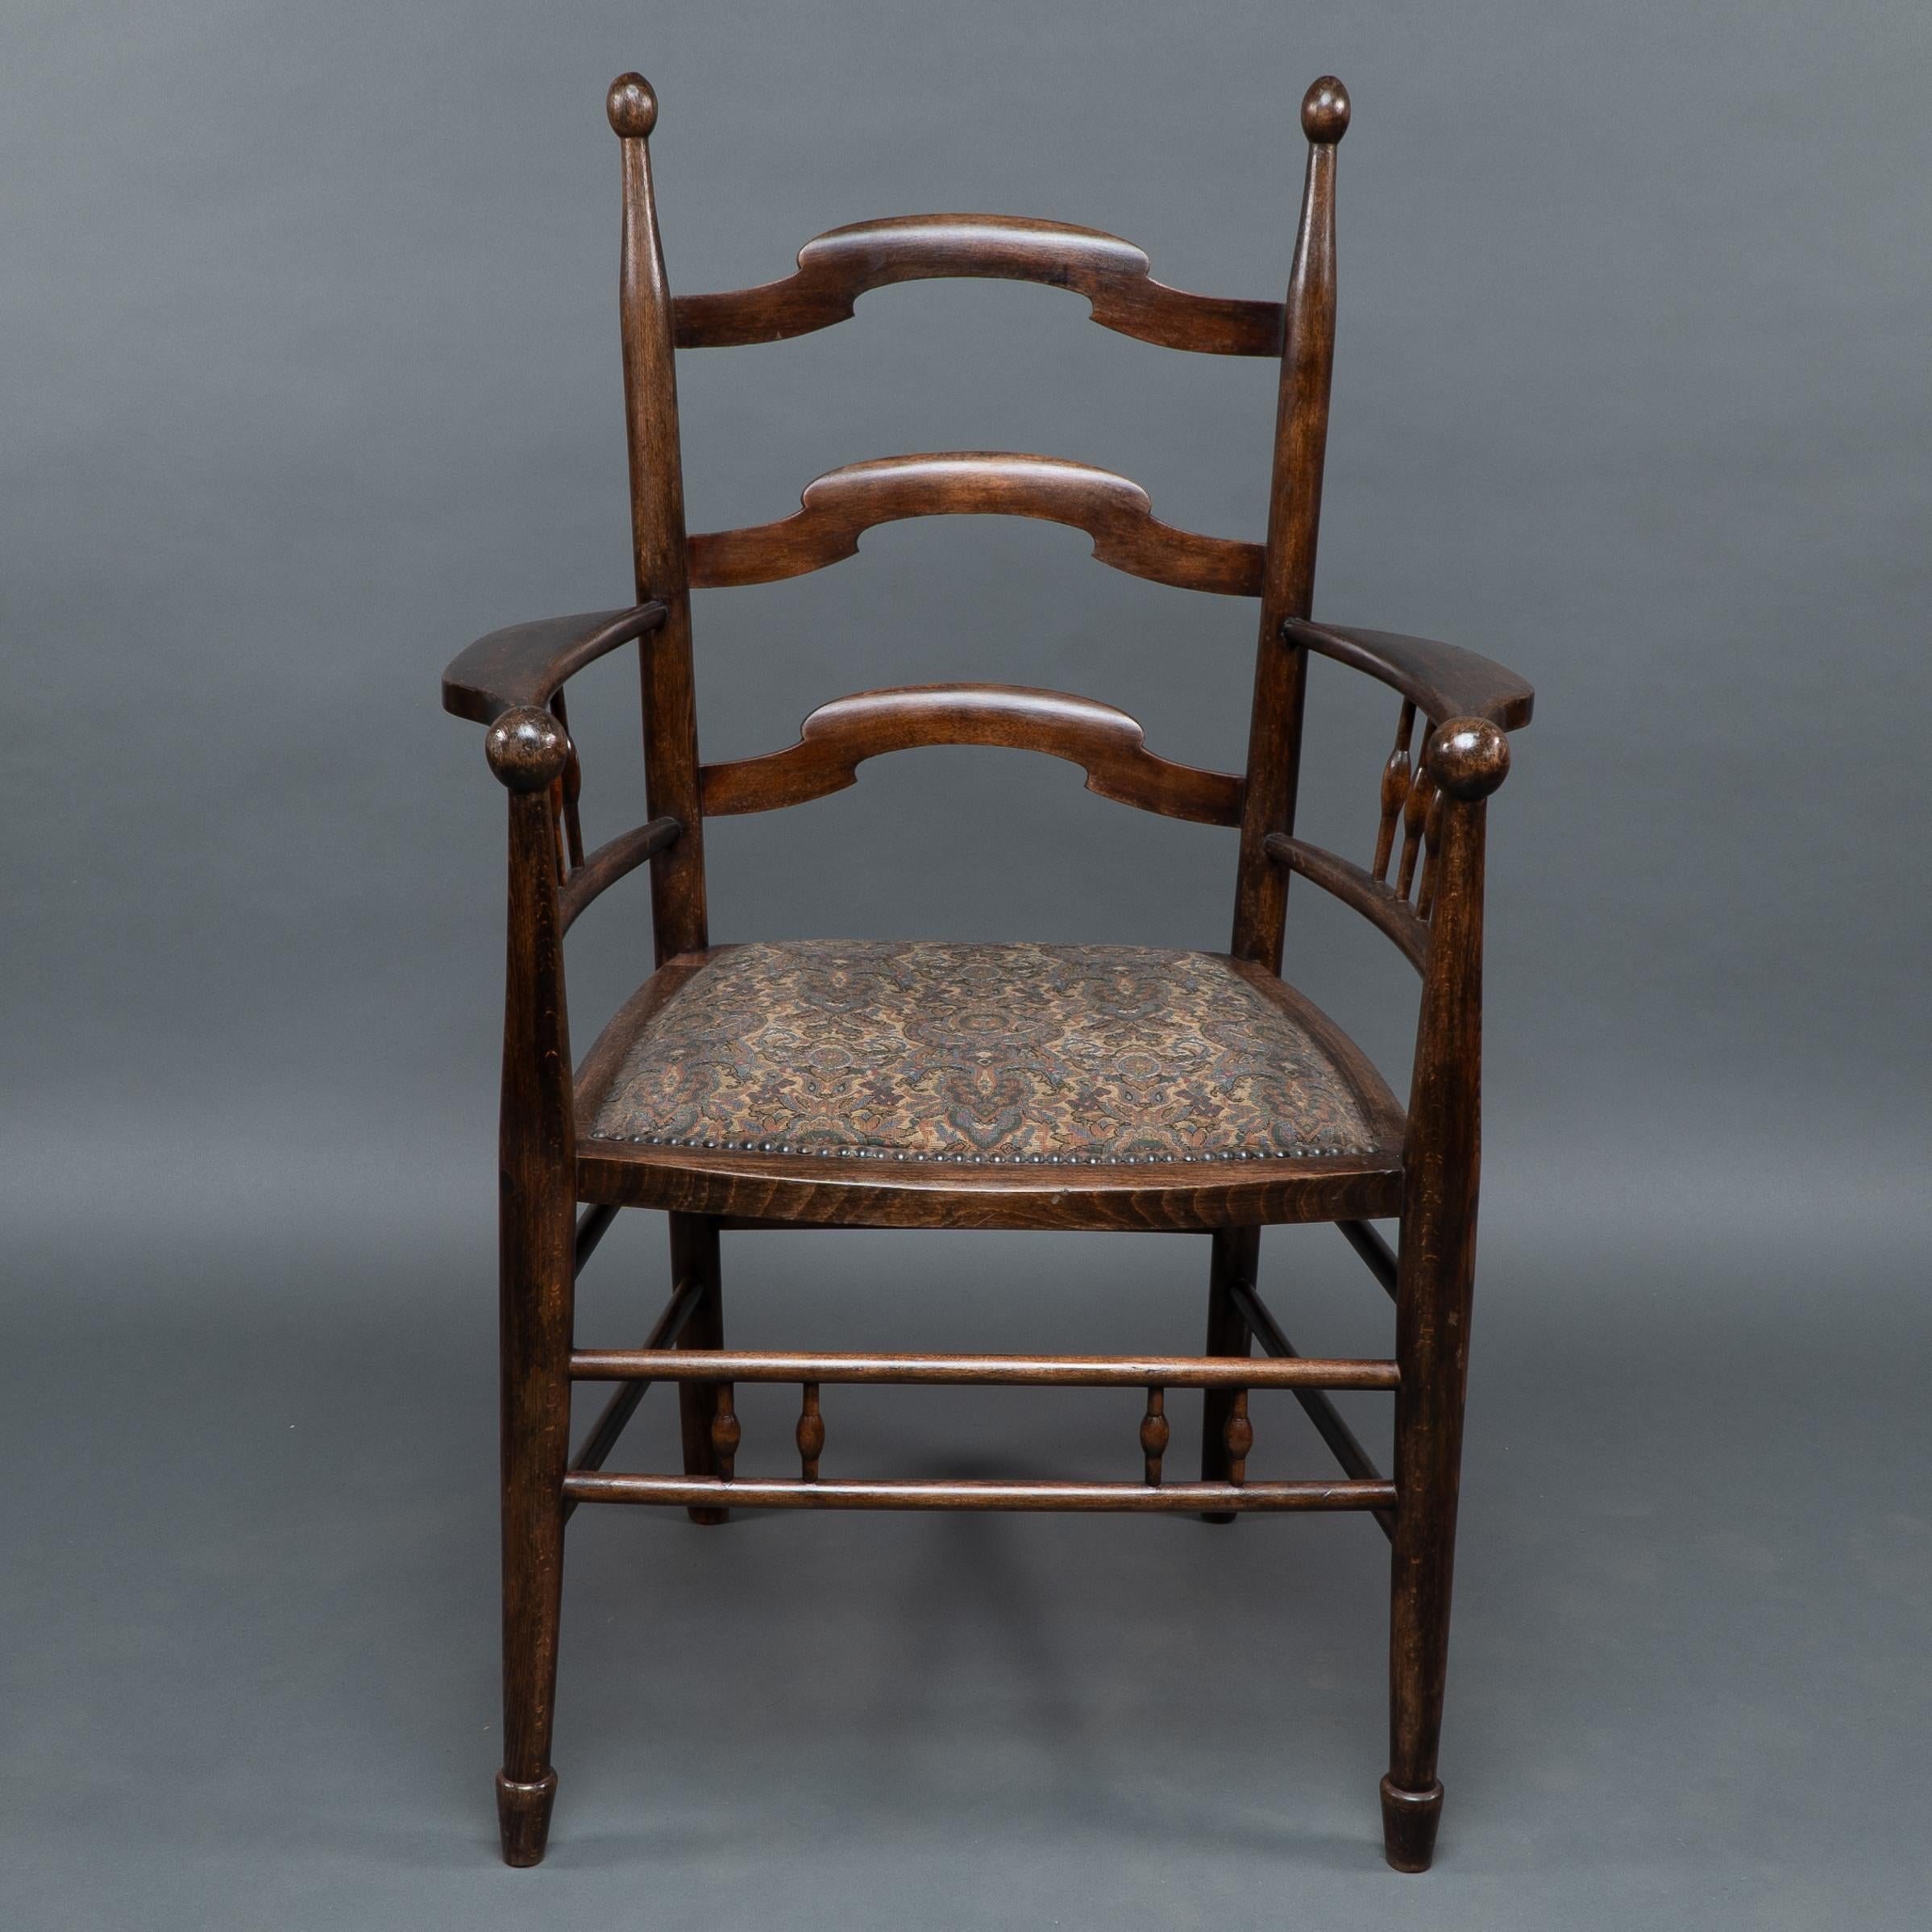 Liberty & Co zugeschrieben, hergestellt von William Birch. 
Eine englische Arts & Crafts geformt Leiter zurück Sessel mit Kugel Finials an der Rückseite und an der Vorderseite der Arme mit gedrehten Stützen unten und weitere gedrehte Stützen